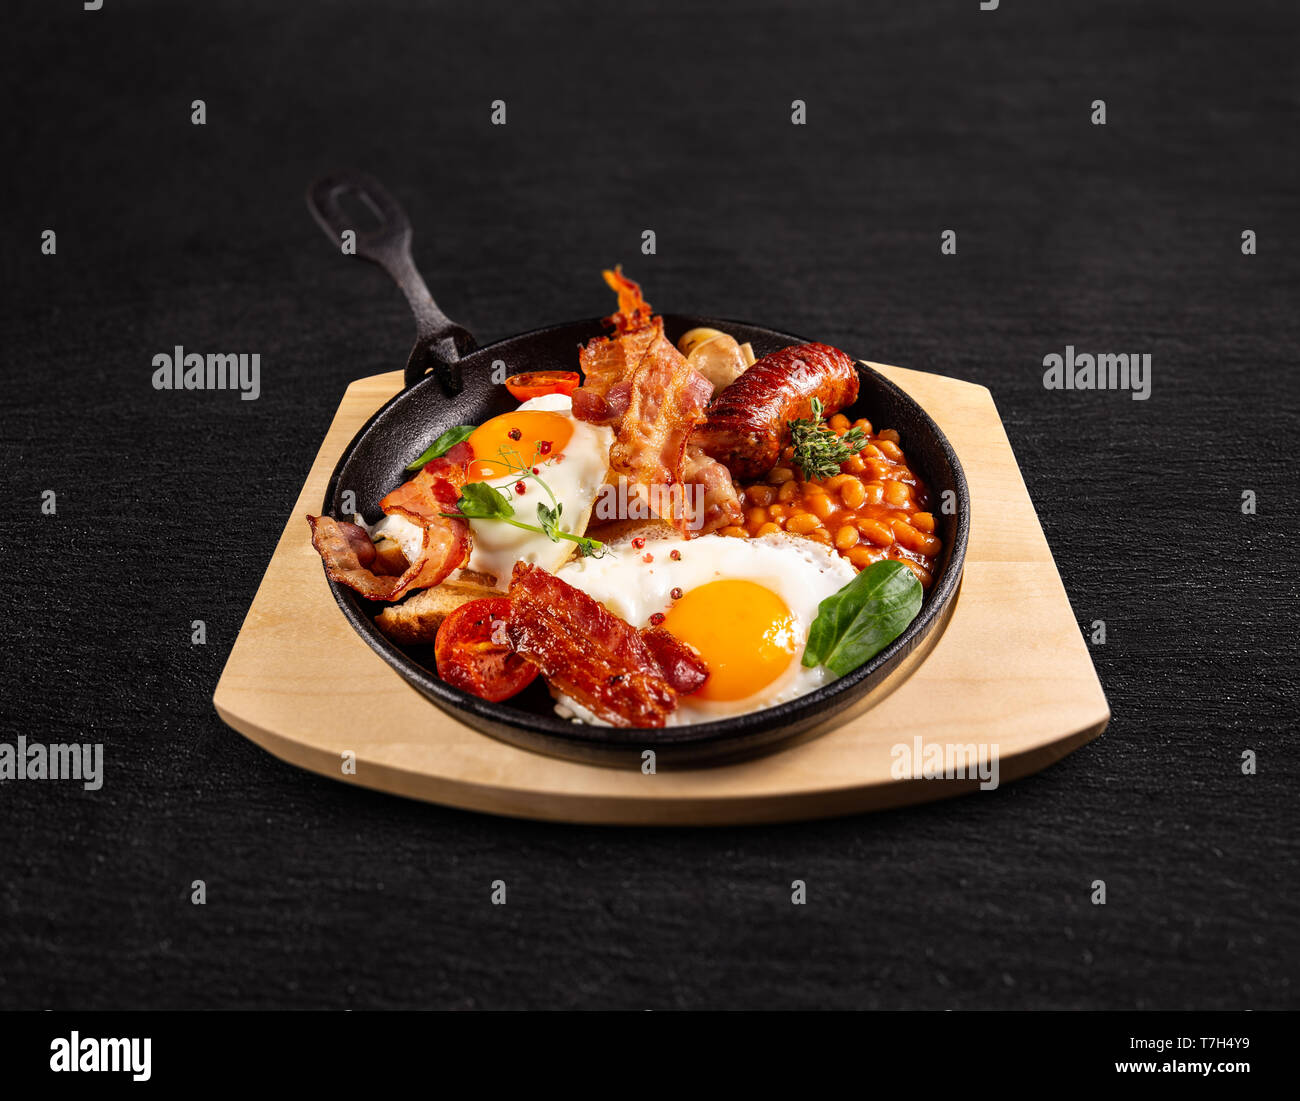 Tradizionale colazione inglese completa servita nel recipiente di cottura su sfondo nero Foto Stock